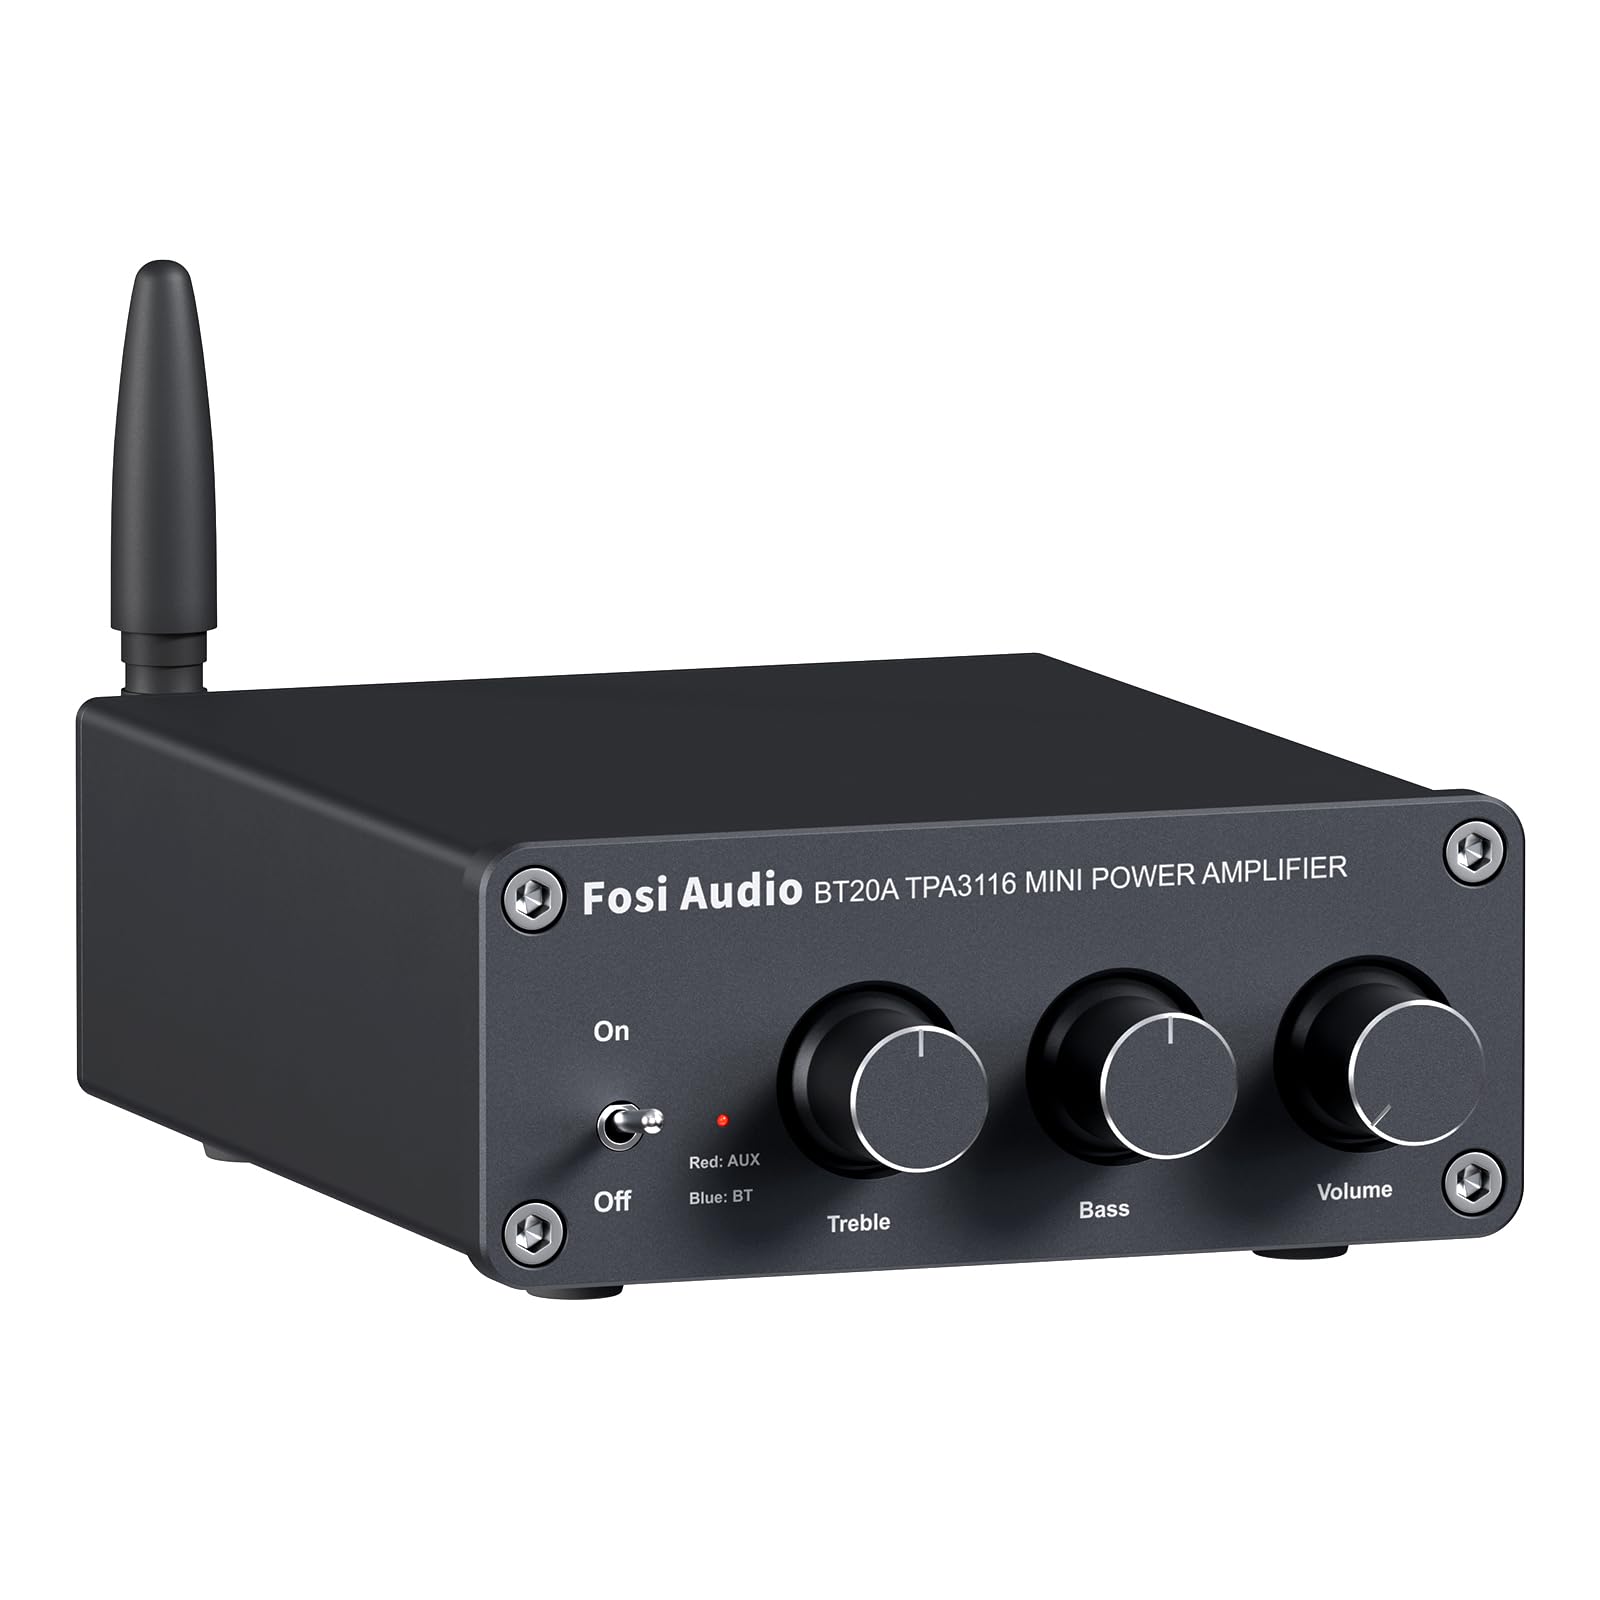  Fosi Audio BT20A Bluetooth 5.0 Áudio Estéreo Amplificador de 2 Canais Receptor Mini Hi-Fi Classe D Amp Integrado 2.0 CH para Alto-falantes Domésticos 100W x 2 com Controle de Graves e Agudos TPA3116...